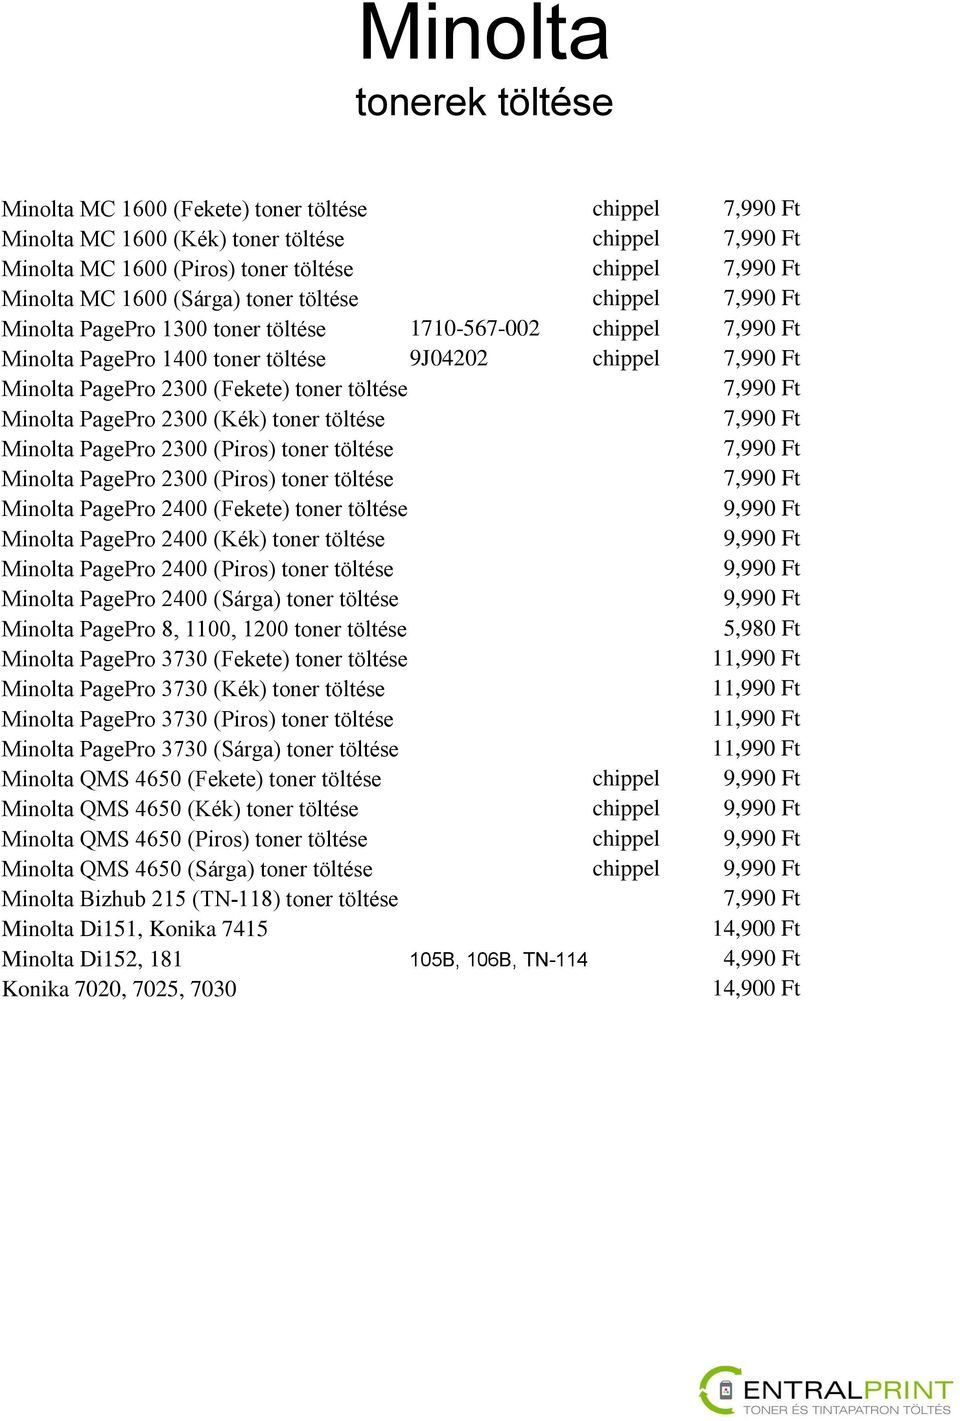 7,990 Ft Minolta PagePro 2300 (Kék) toner töltése 7,990 Ft Minolta PagePro 2300 (Piros) toner töltése 7,990 Ft Minolta PagePro 2300 (Piros) toner töltése 7,990 Ft Minolta PagePro 2400 (Fekete) toner